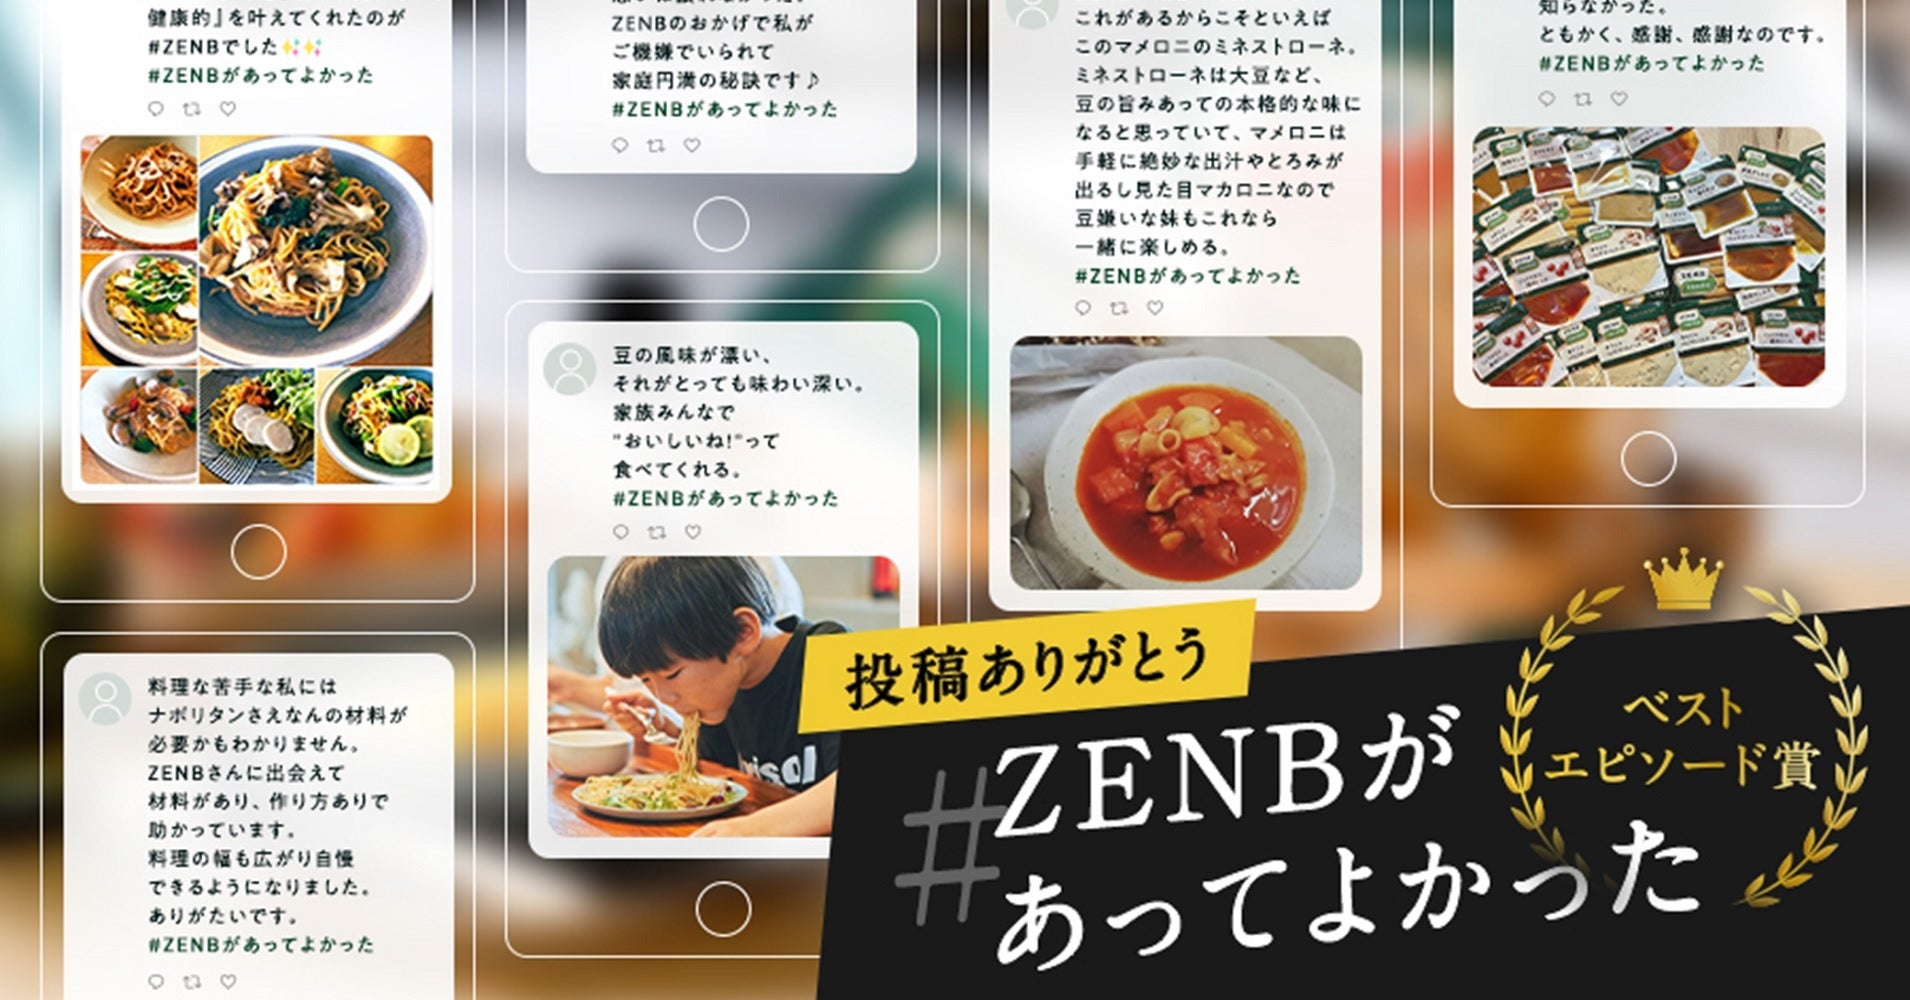 素敵な投稿をありがとう！#ZENBがあってよかった Twitter投稿キャンペーン受賞者発表のサブ画像1